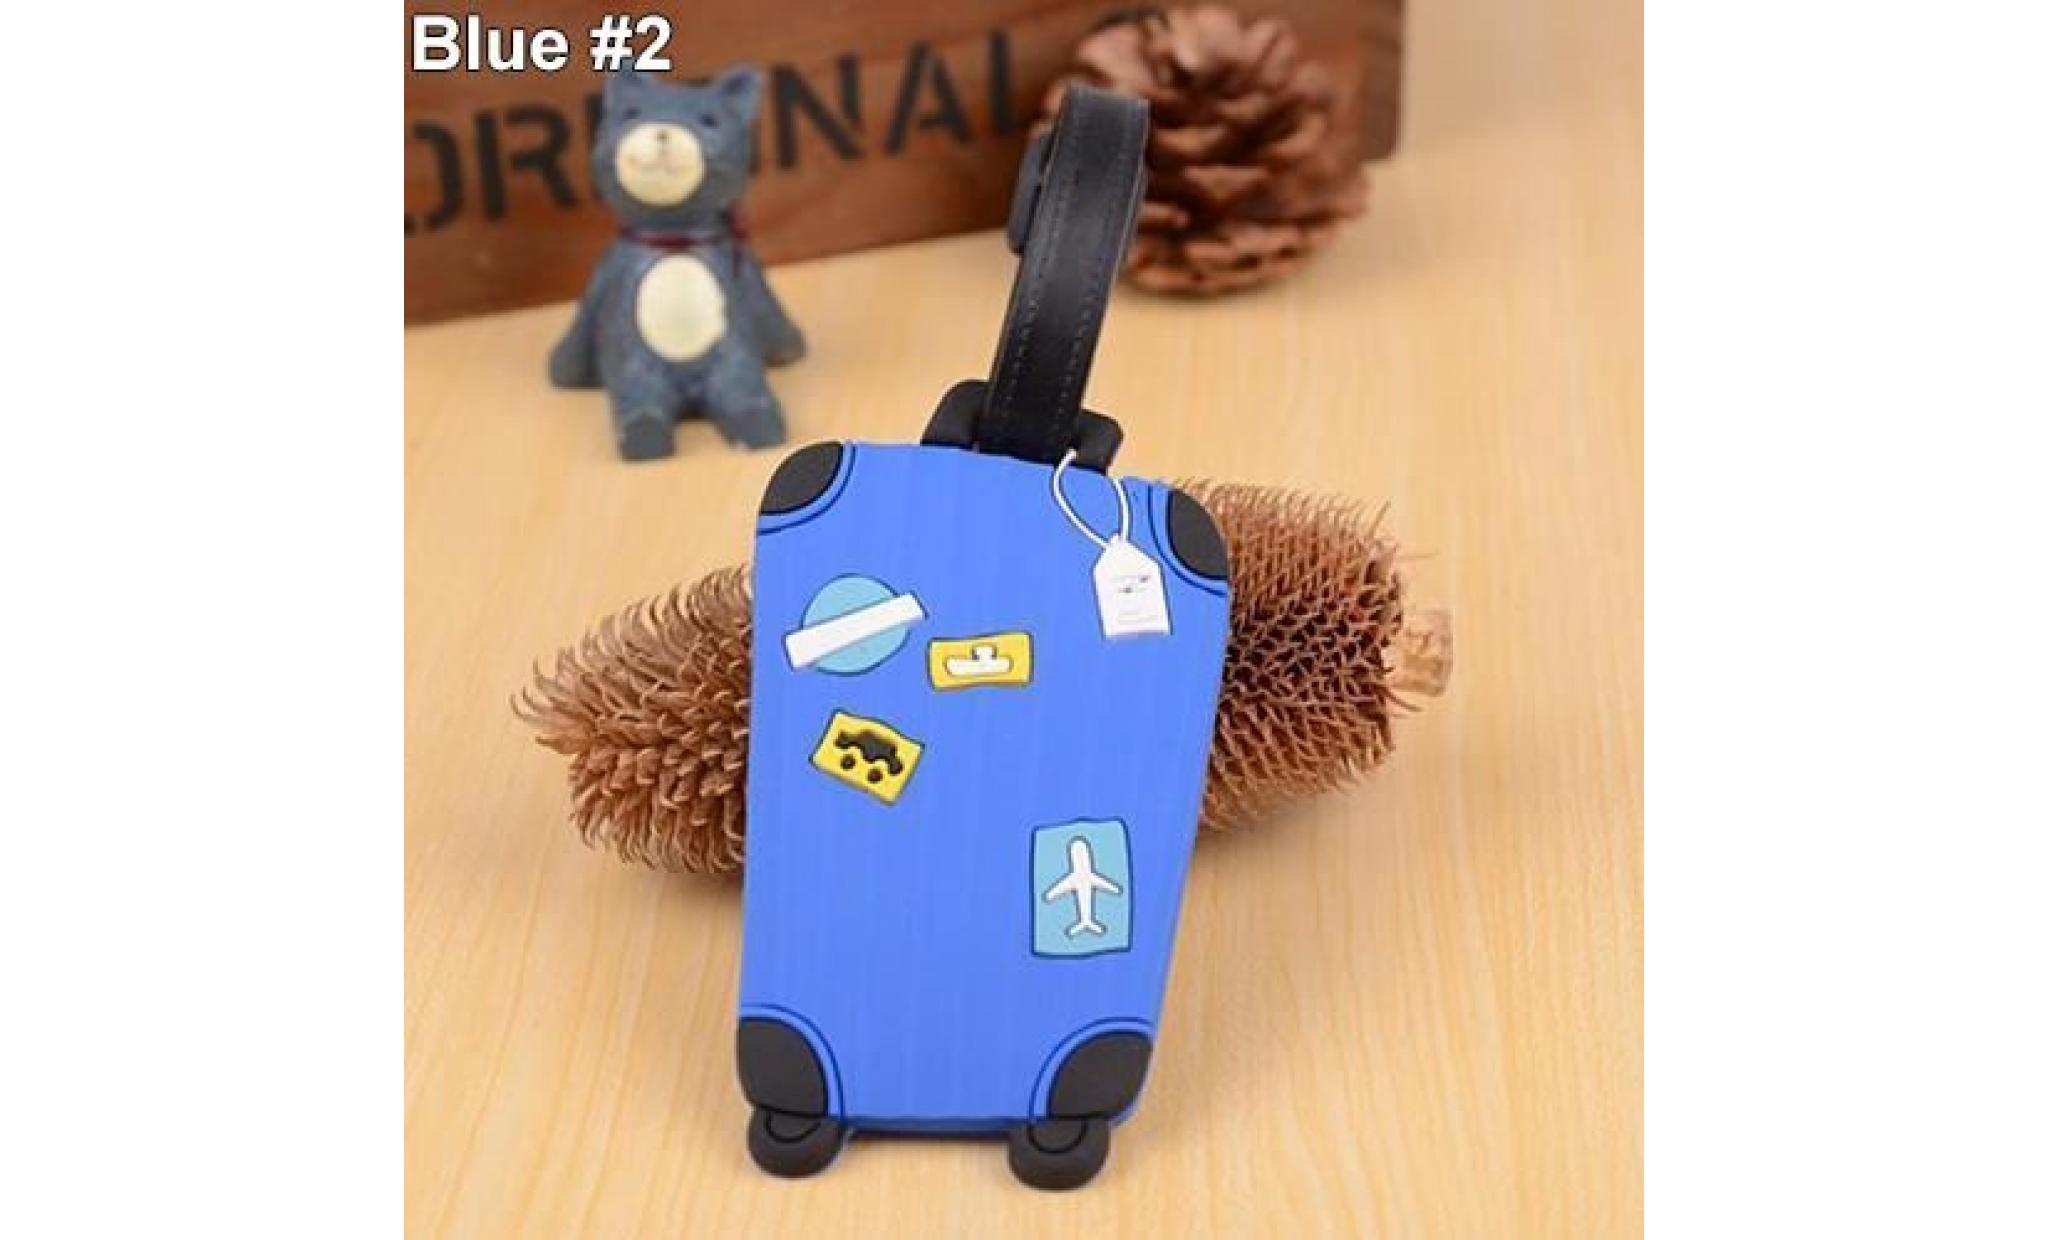 motif de valise etiquettes de bagages nom adresse identifiant adresse identifiant du détenteur etiquette bleu foncé # 1